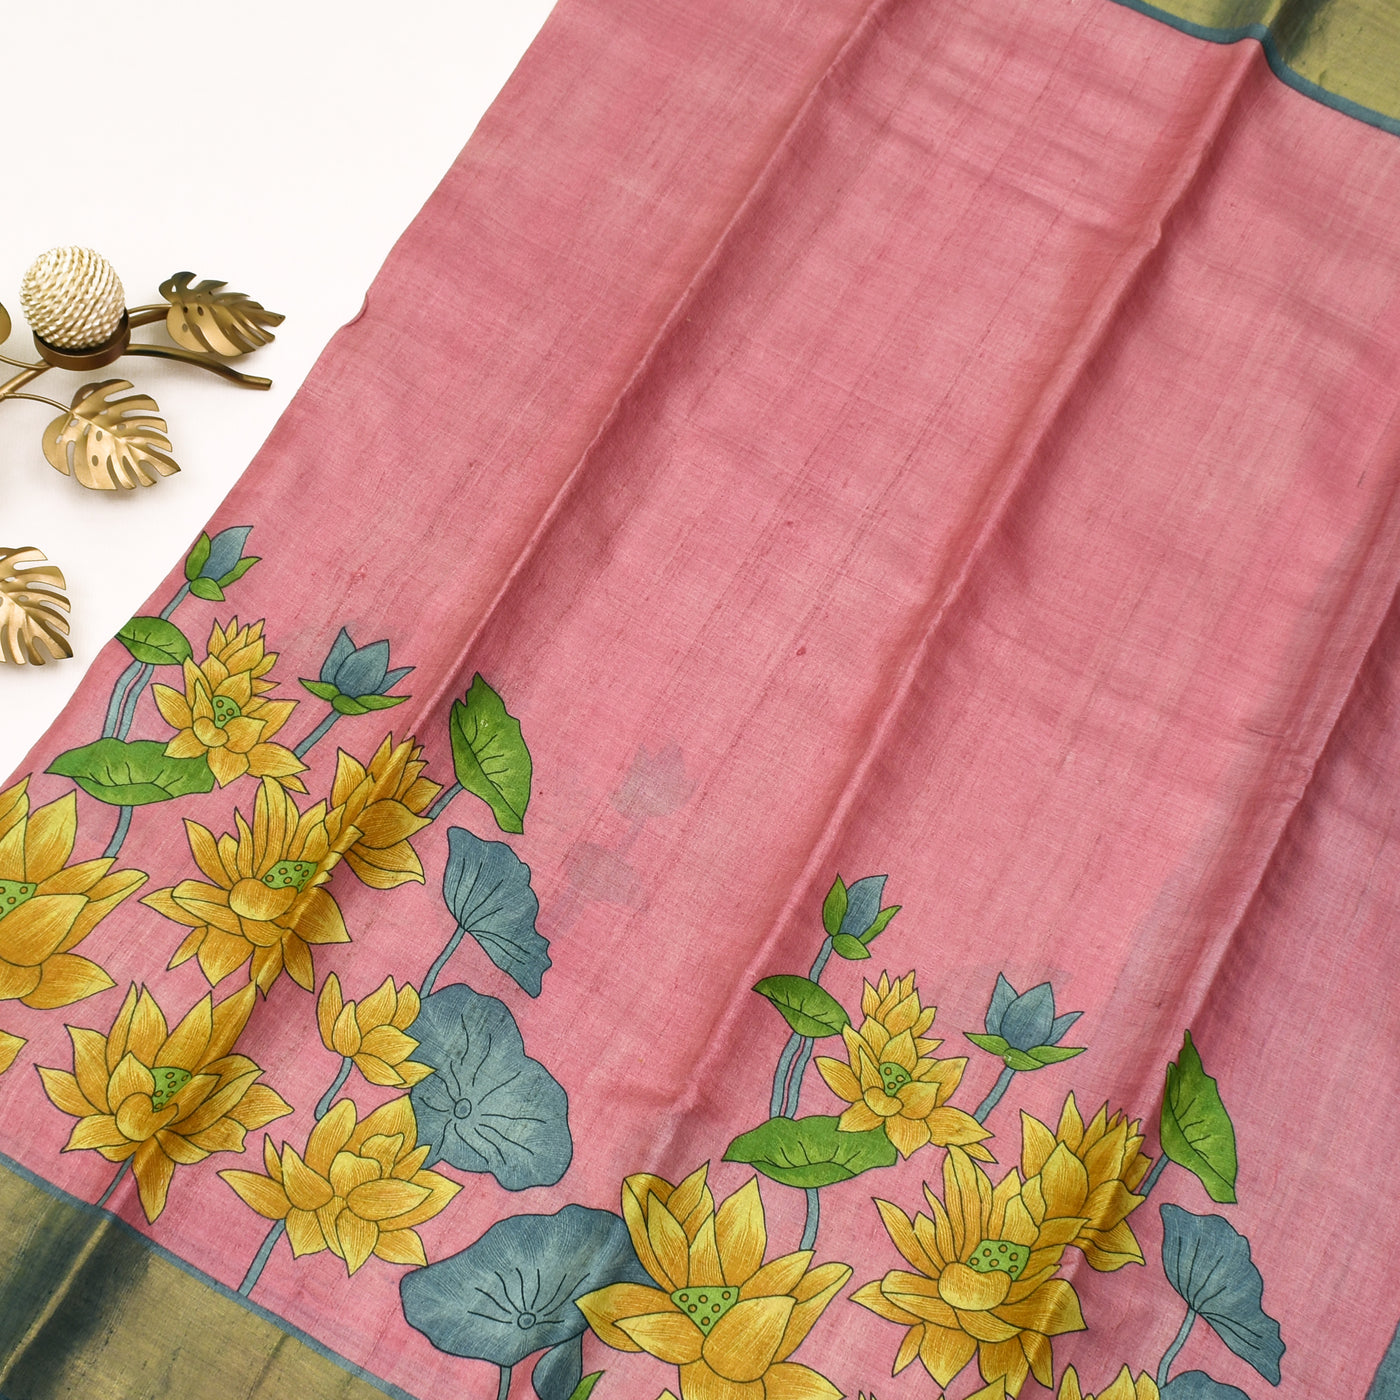 Onion Pink Tussar Silk Saree with lotus printed design